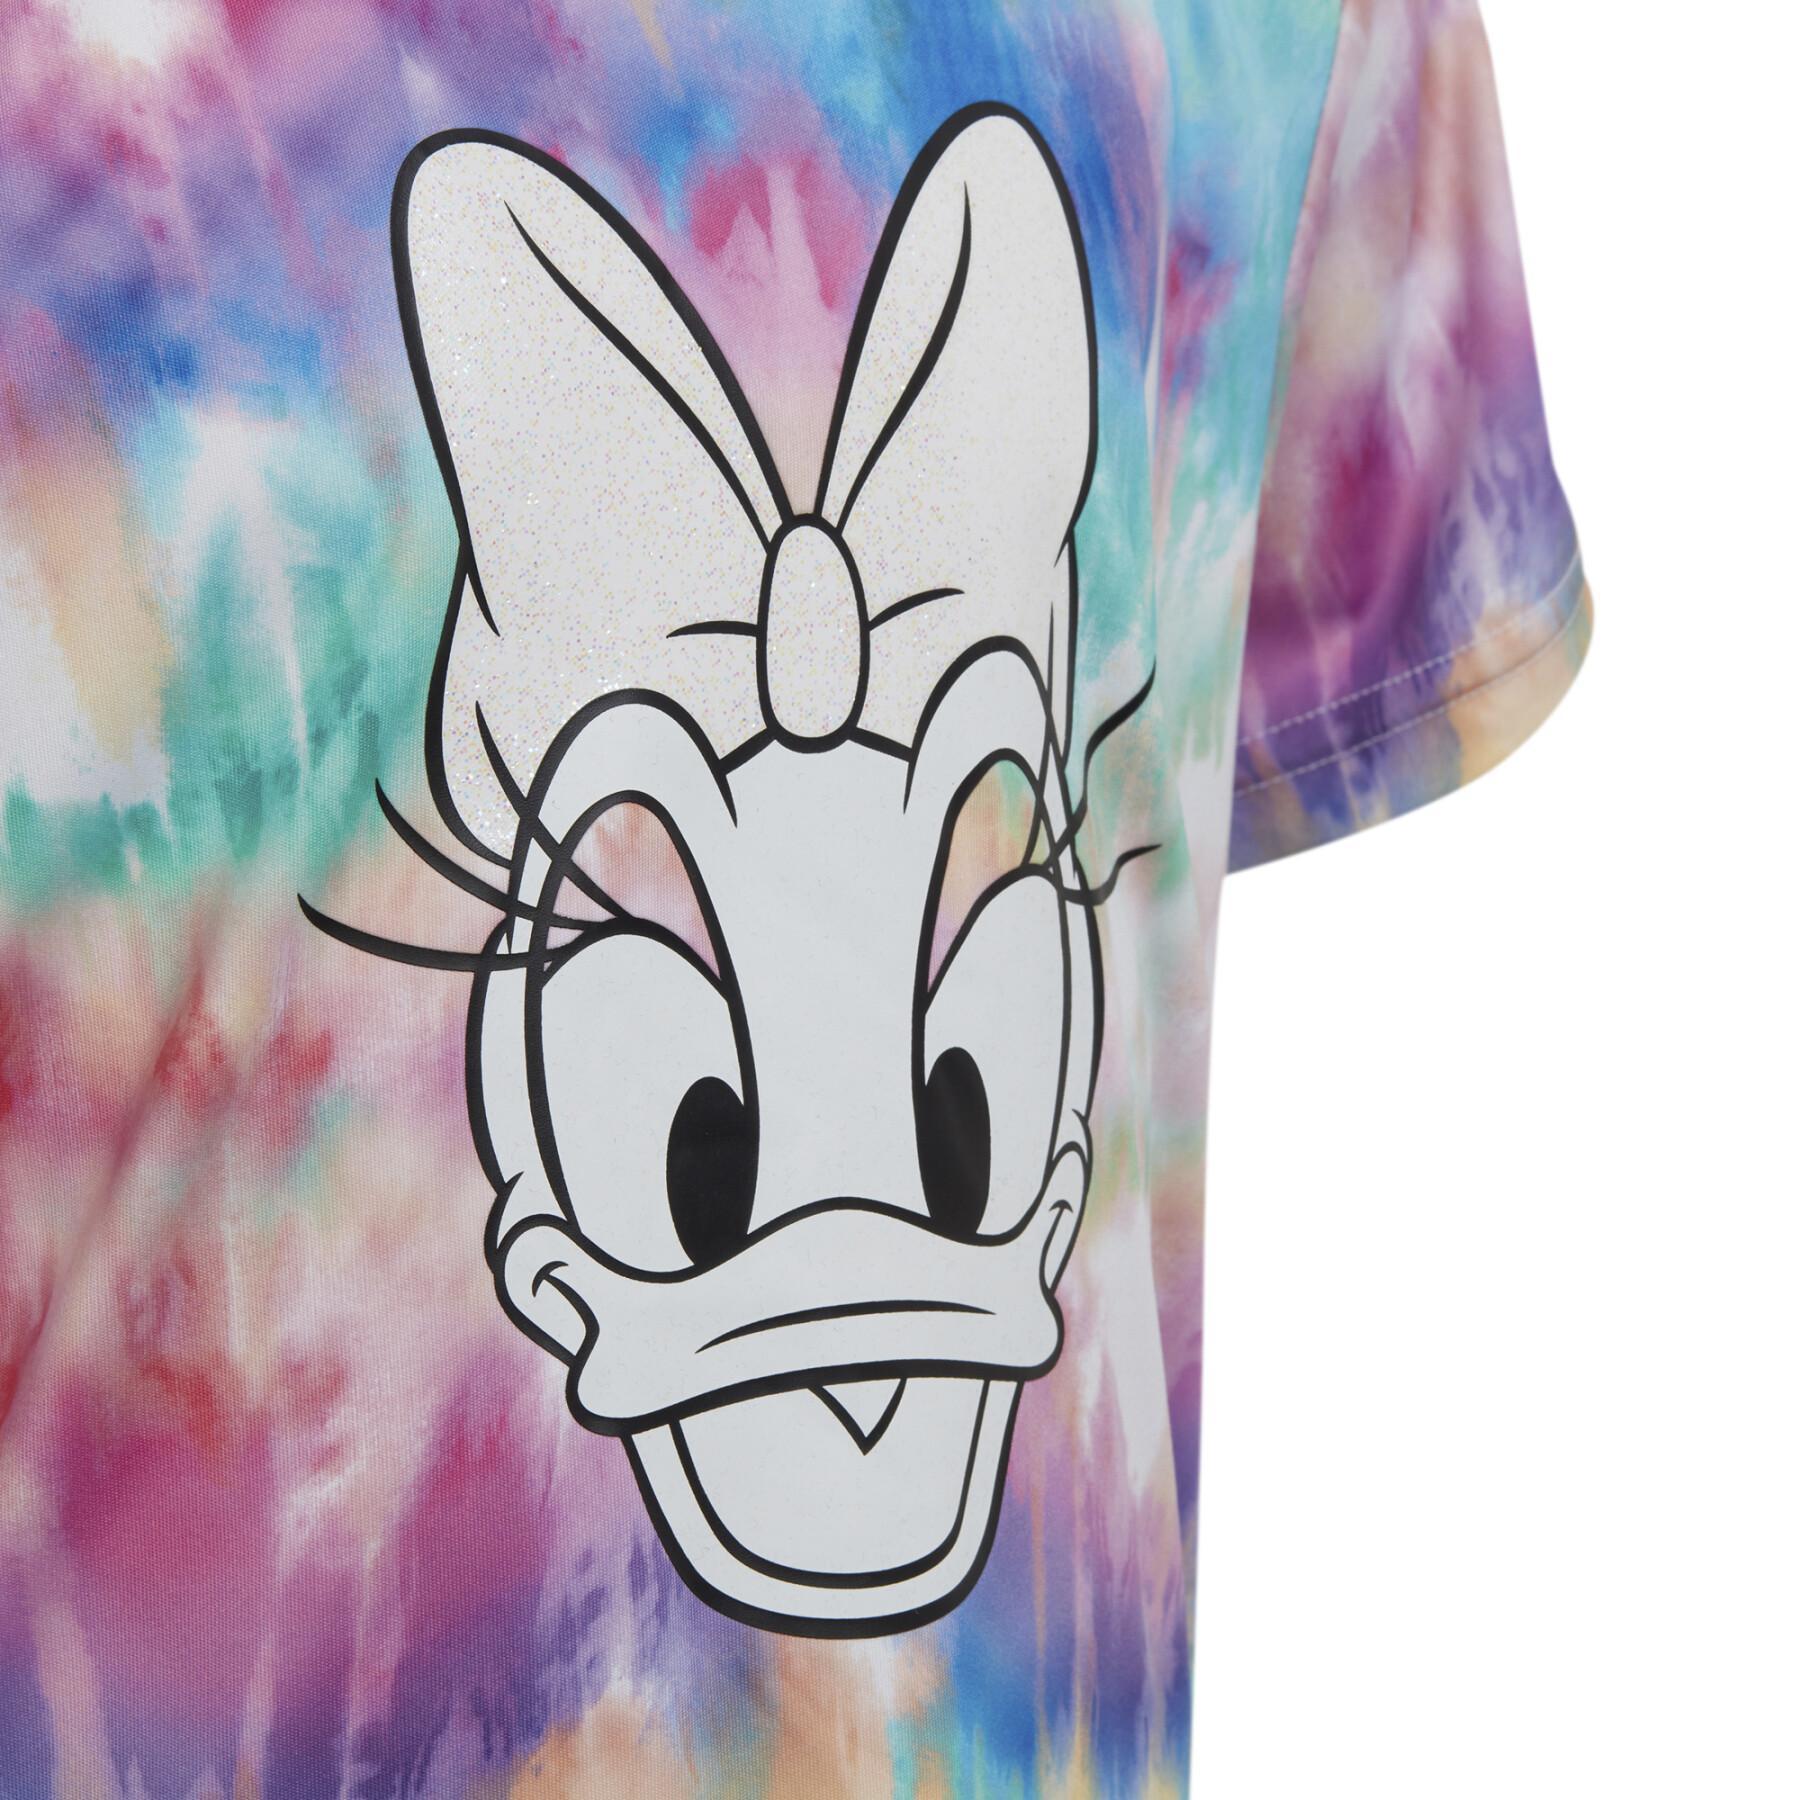 Mädchen-T-Shirt adidas Disney Daisy Duck